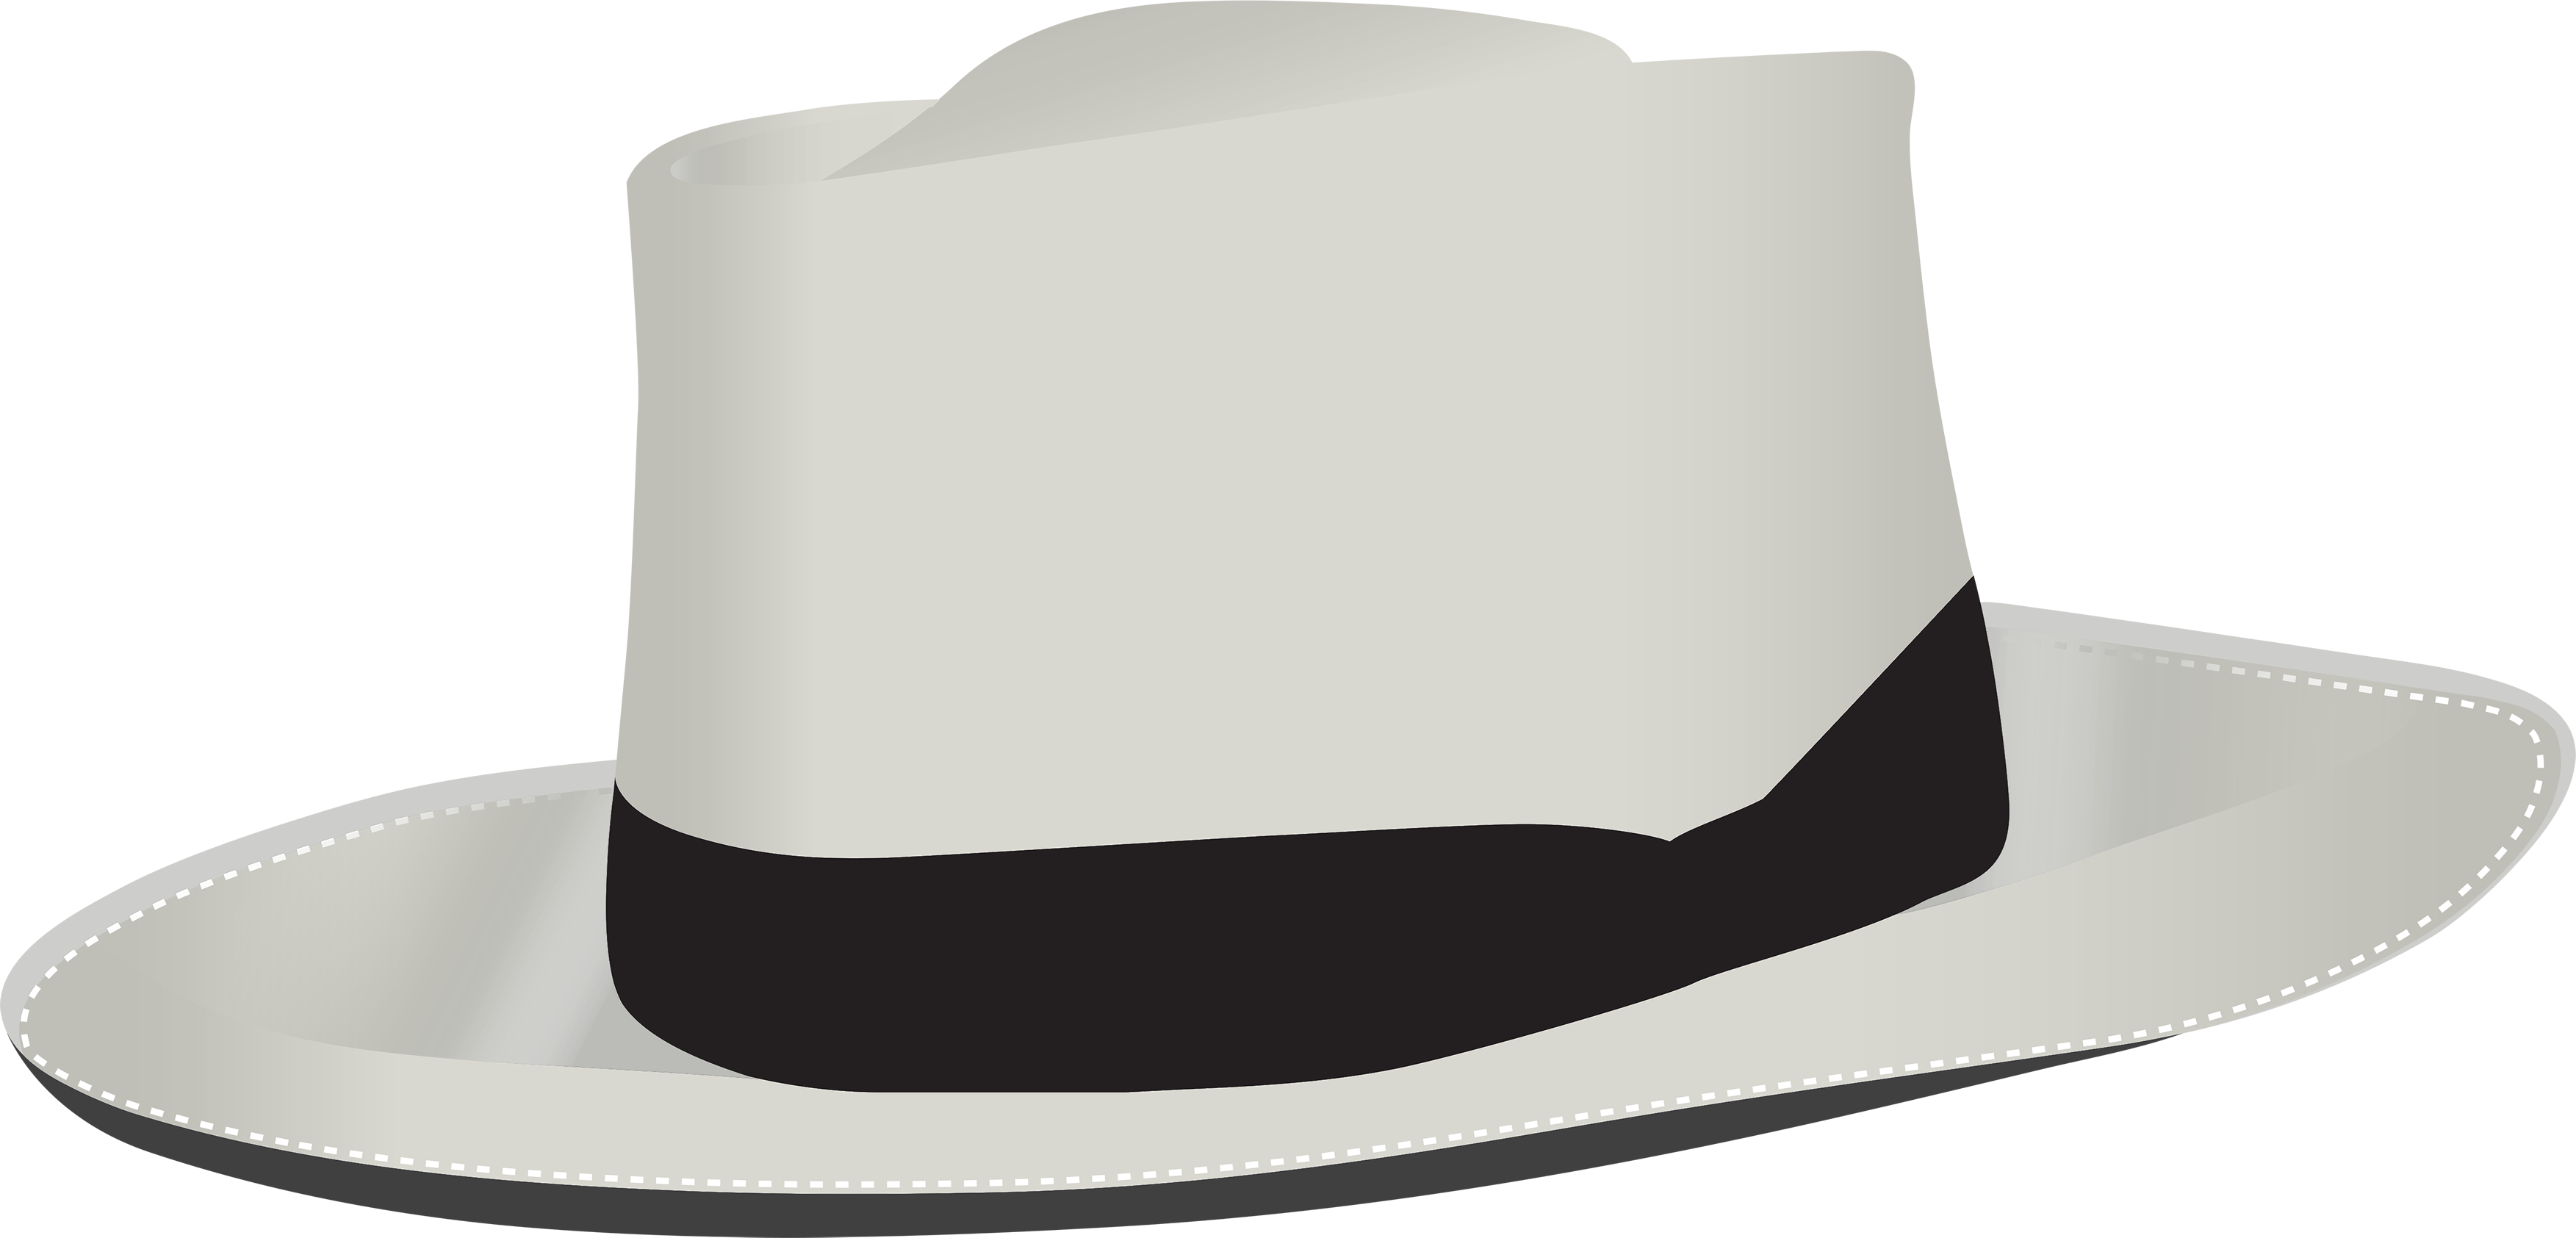 Sombrero blanco PNG transparente